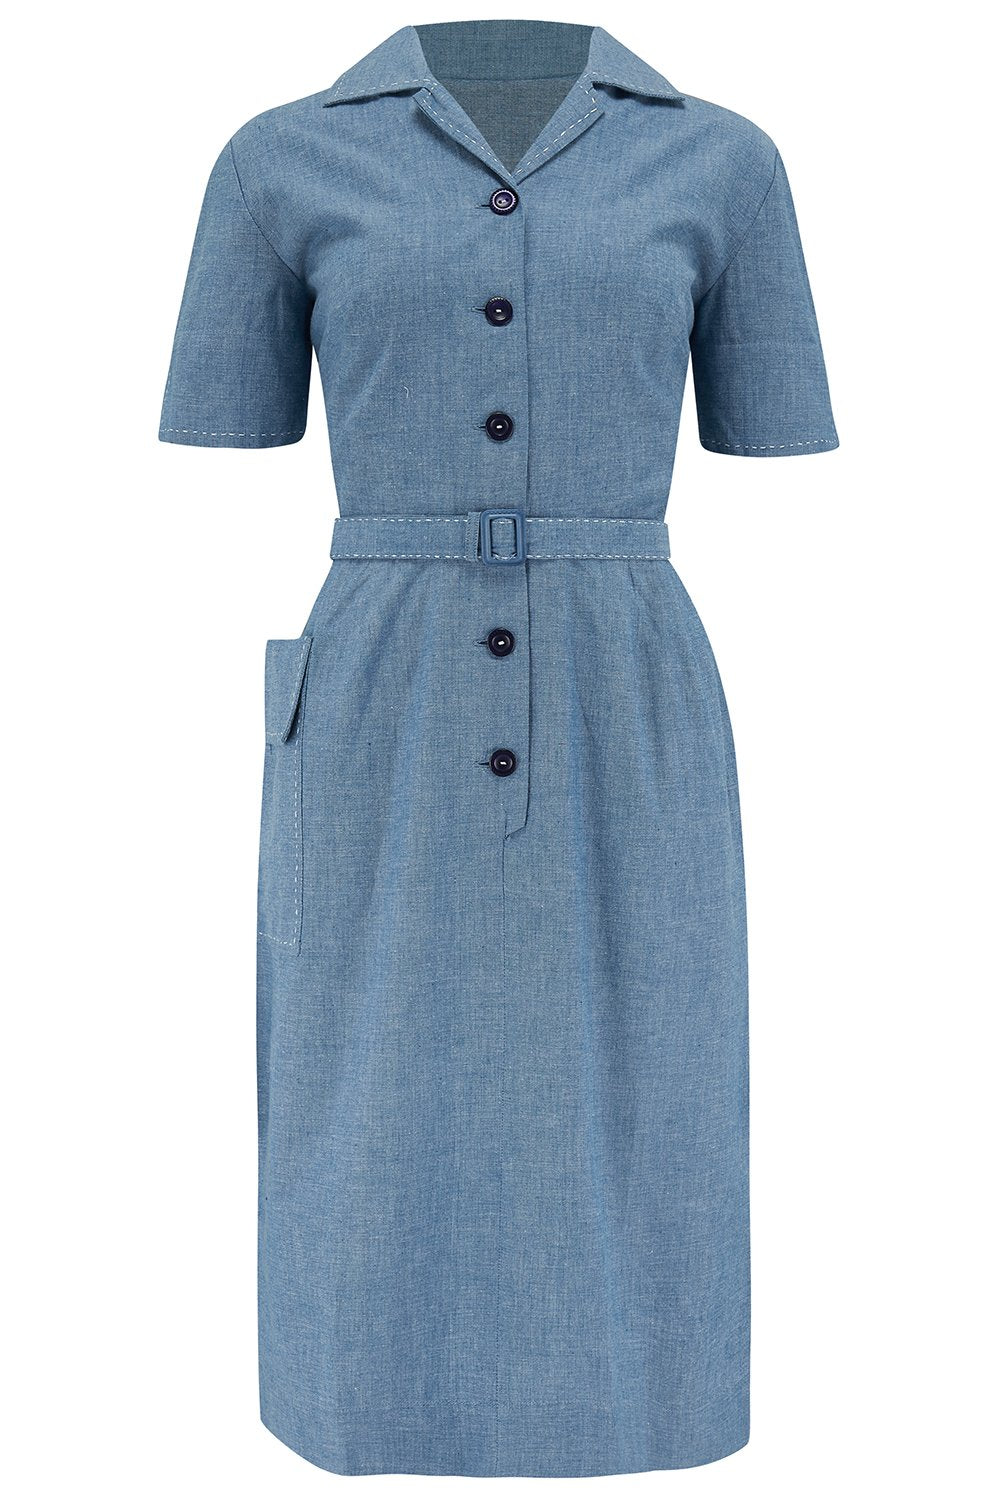 Josie Dress - denim blue